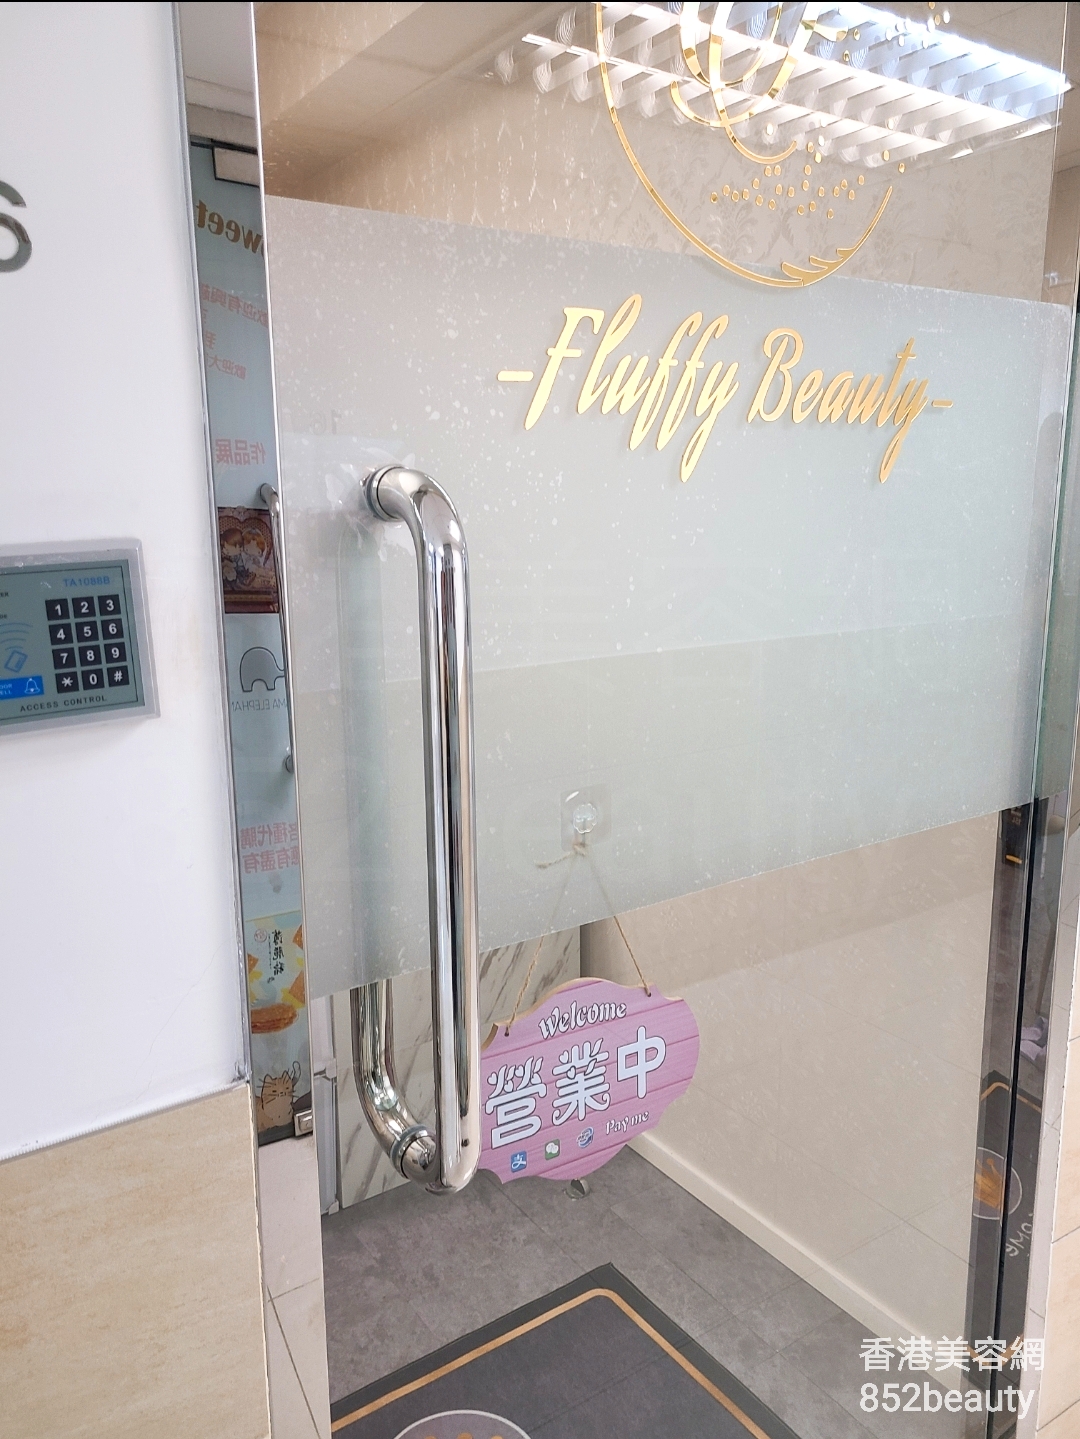 最新美容院 / 美容師Fluffy Beauty @ 香港美容網 Hong Kong Beauty Salon